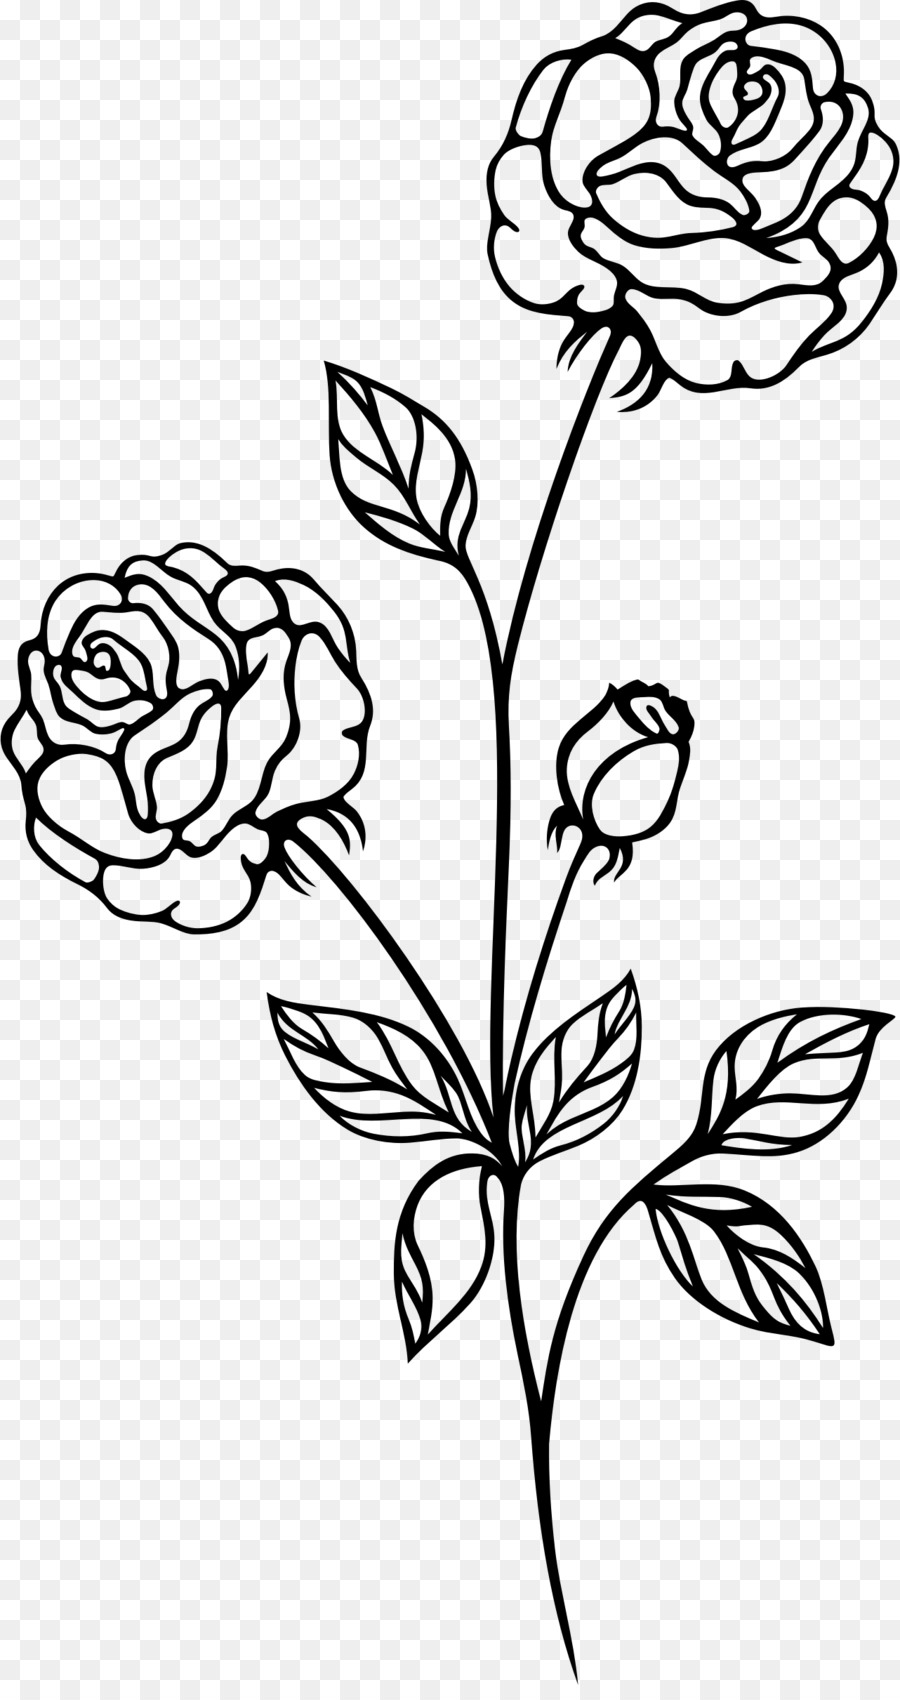 Black Rose Drawing.